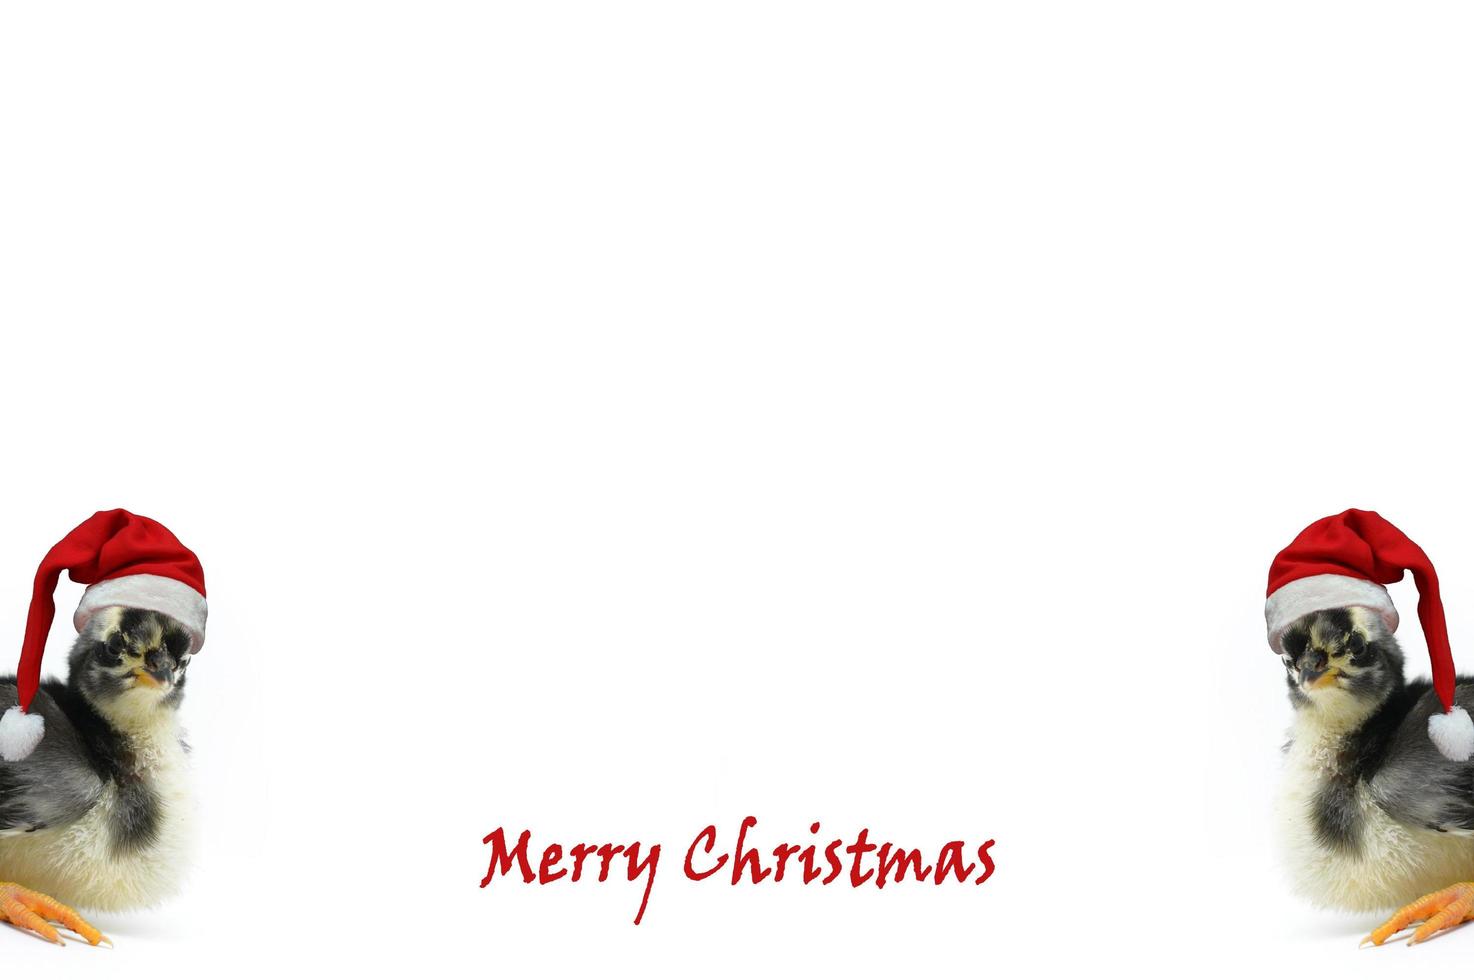 tarjeta de felicitación de navidad con las palabras feliz navidad y pollitos con sombrero rojo de santa sobre un fondo blanco. foto